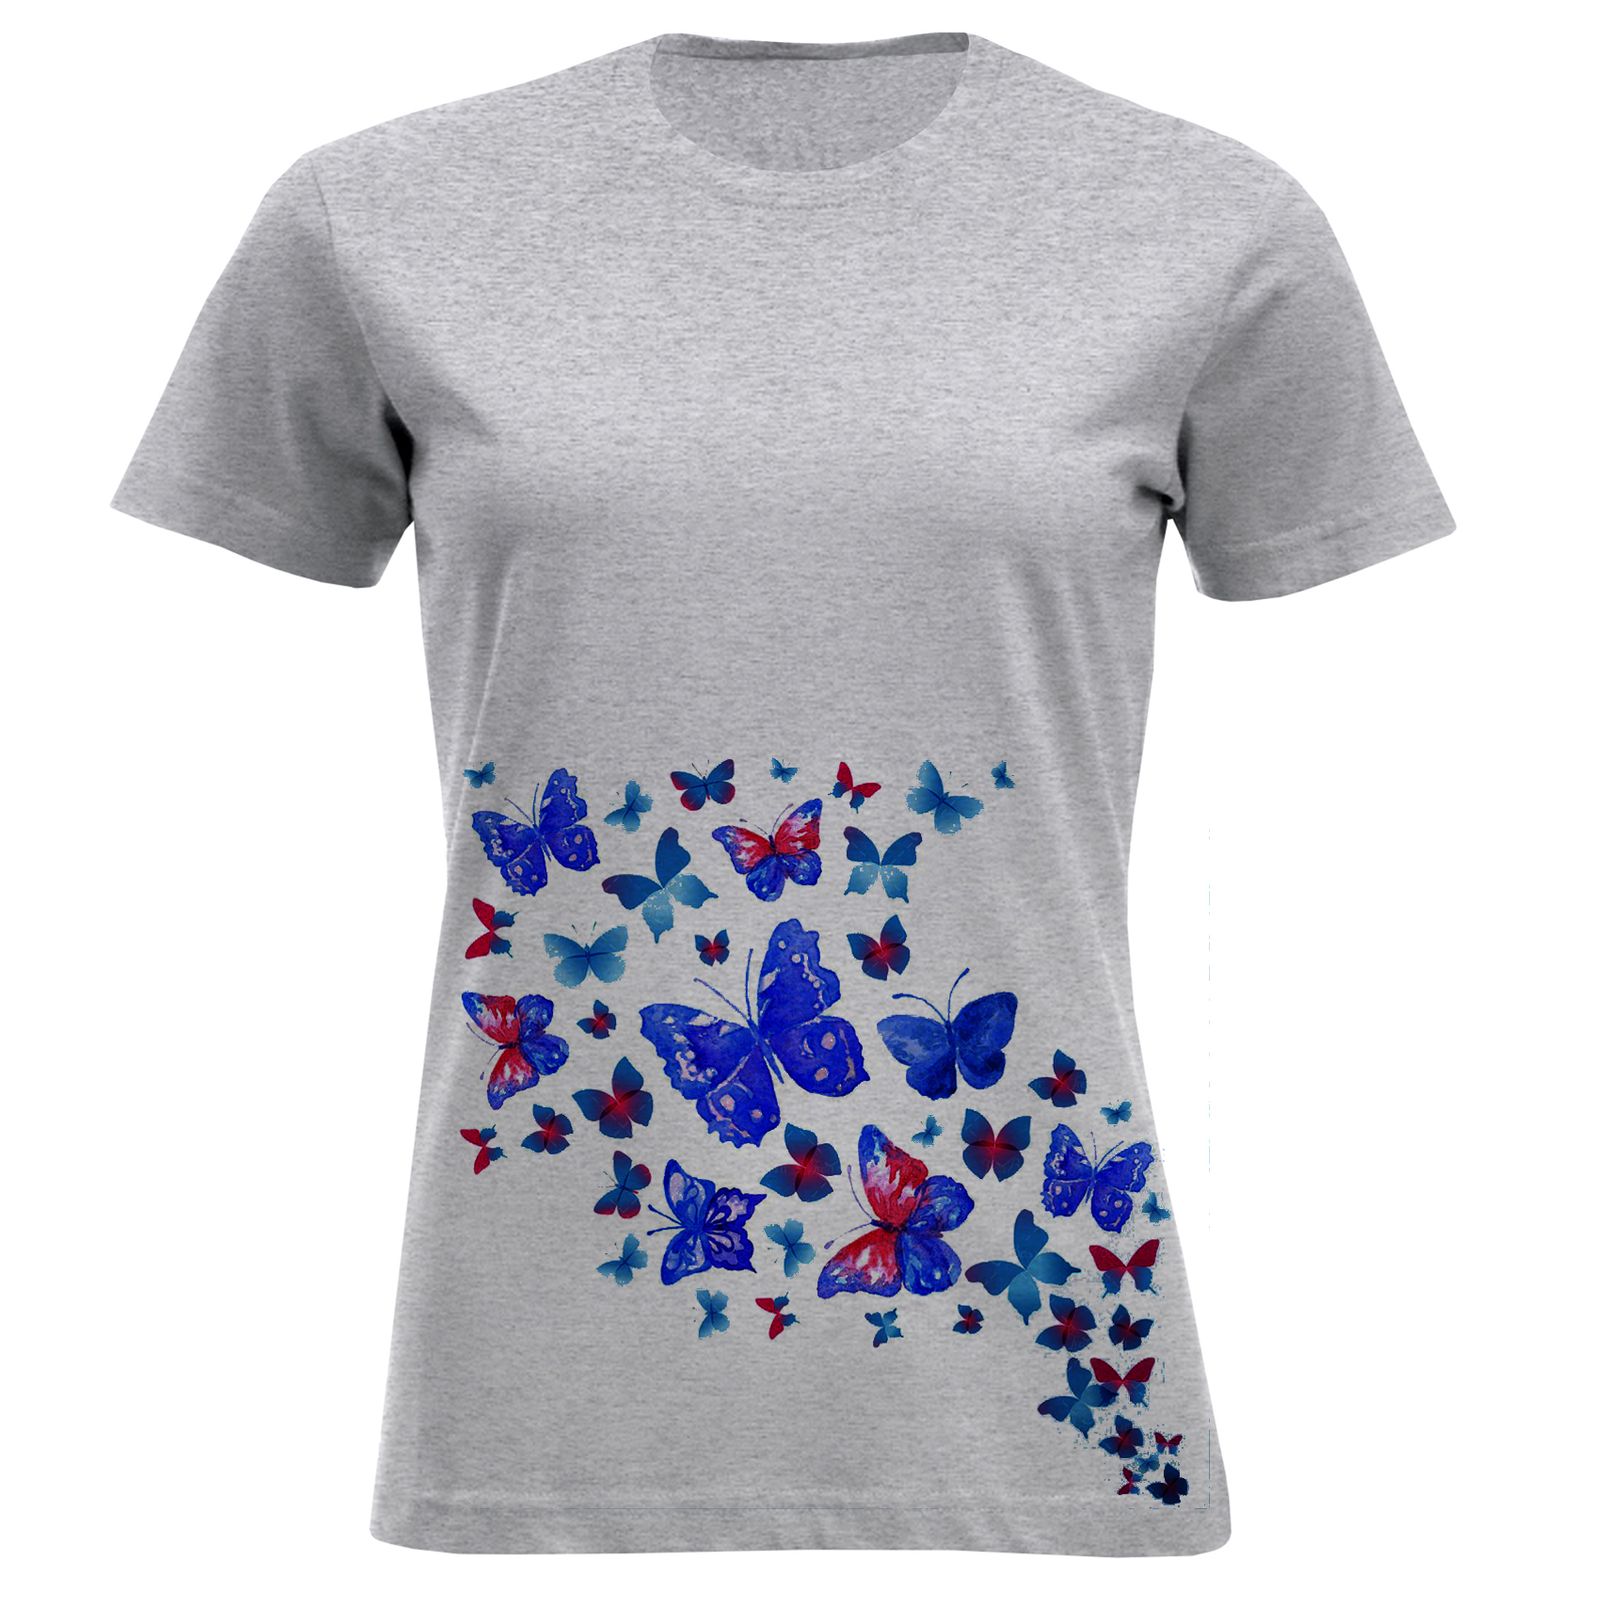 تی شرت زنانه مدل پروانه F897 -  - 2